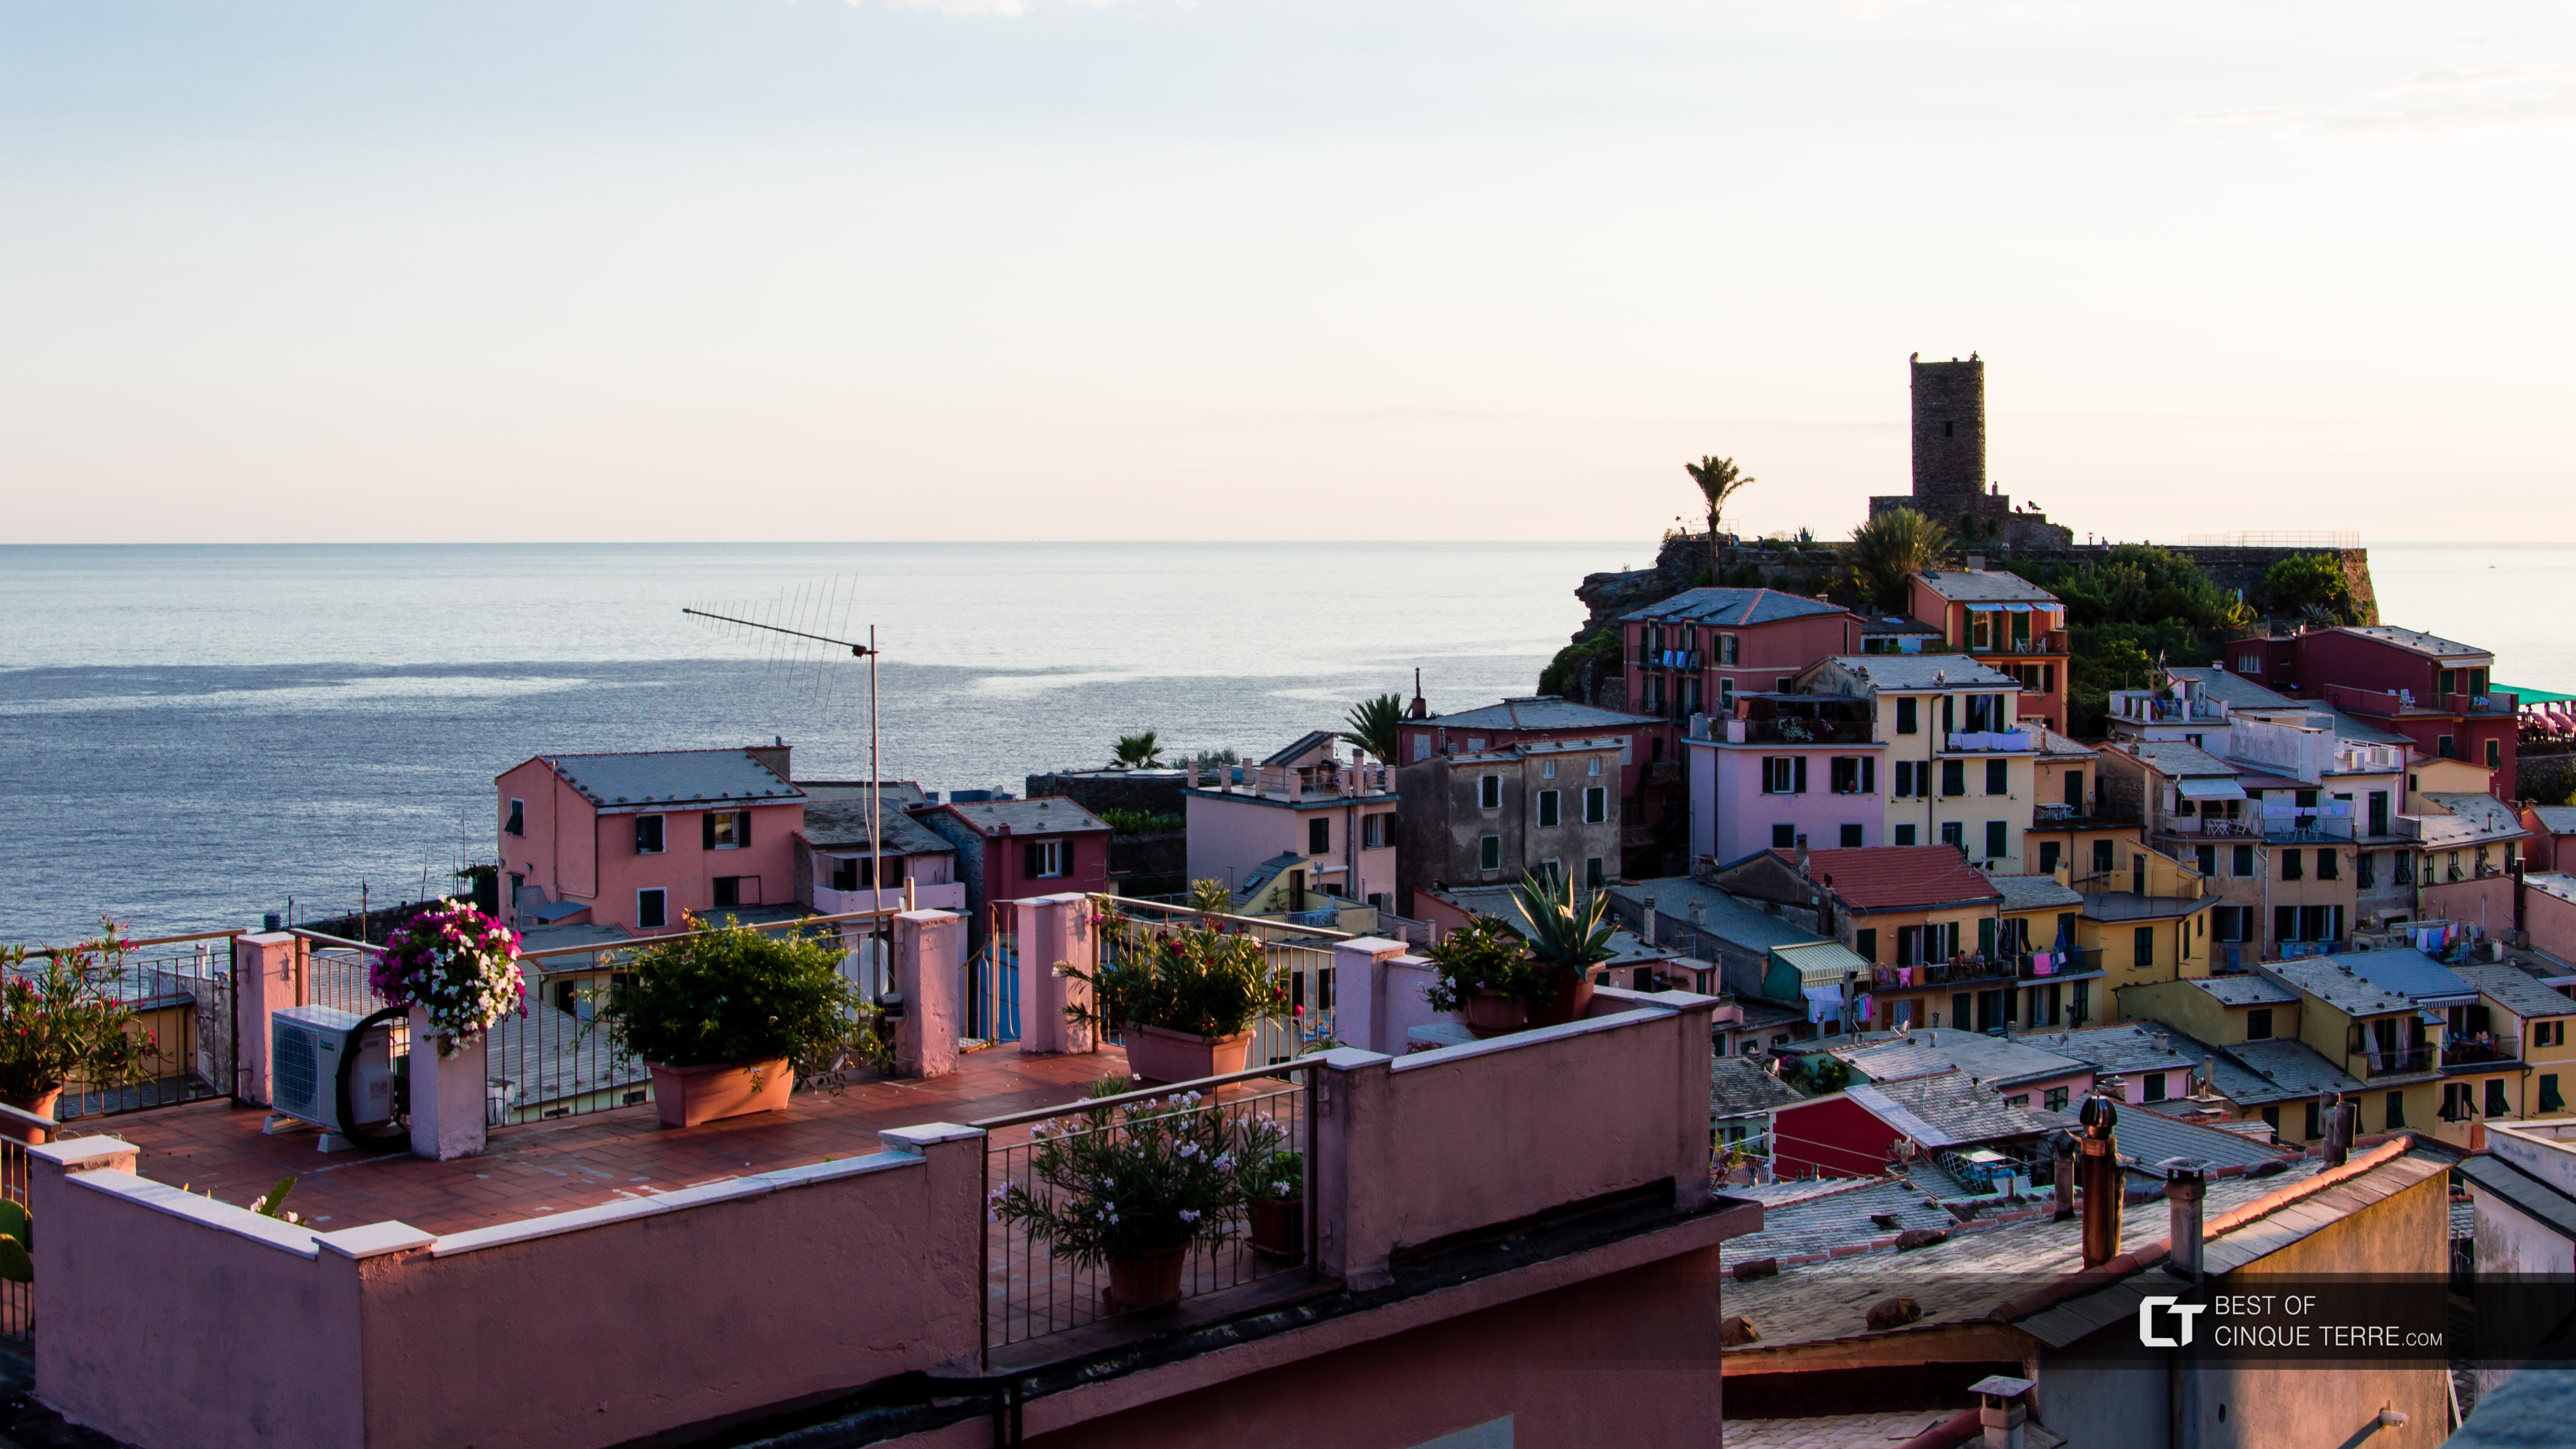 Tetos das casas, Vernazza, Cinque Terre, Itália